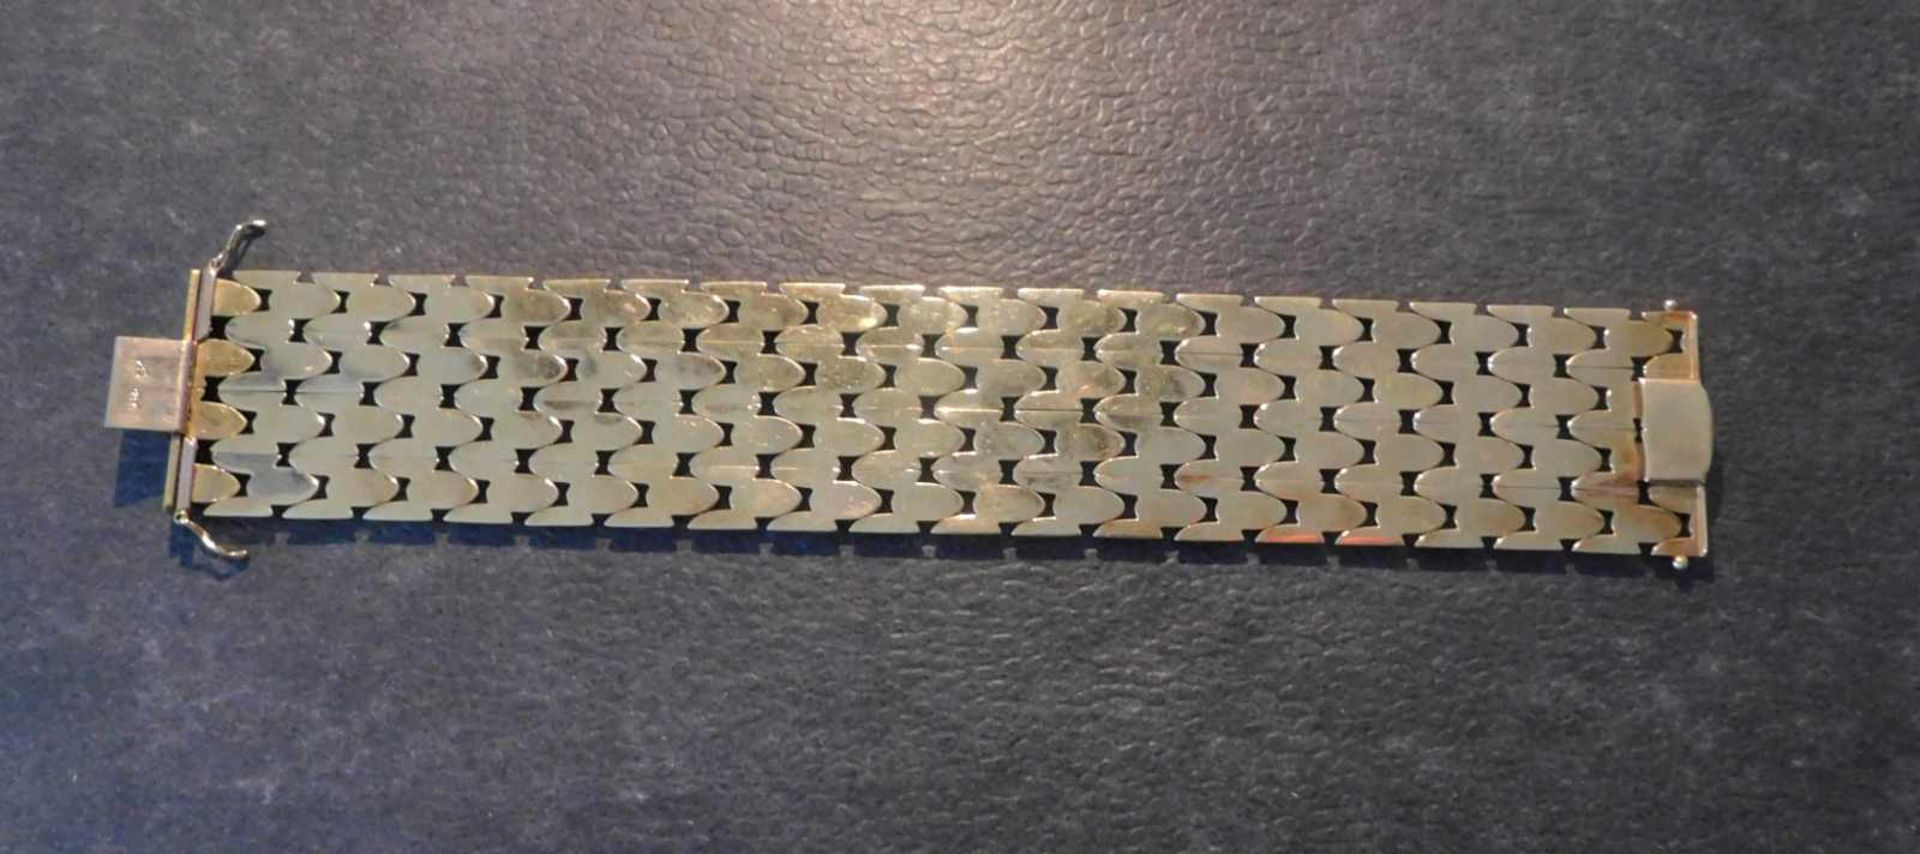 Armband, 585 Gelbgold, 3,5 cm breit, 50,2 g, Steckschloss mit 2 SicherheitsachtenLänge 19,7 cm, - Image 4 of 5